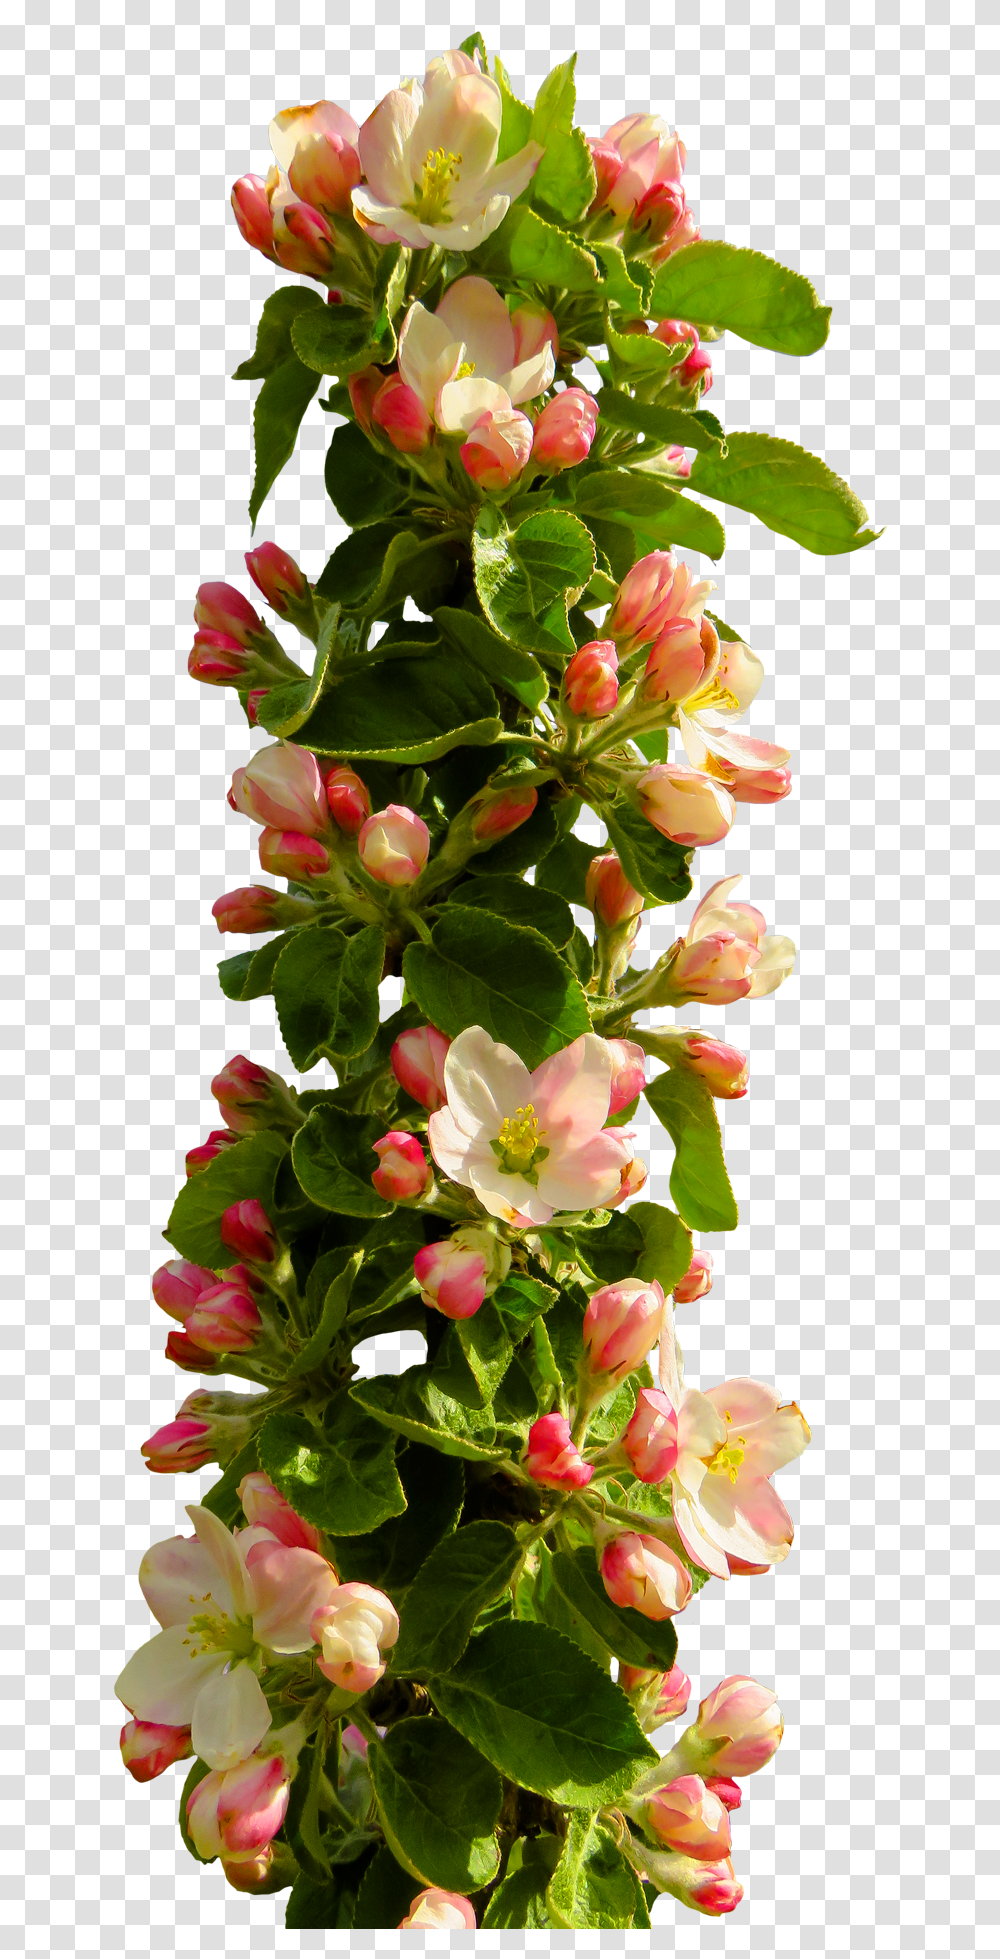 Rose Flower Image Pngpix Format Flowers Hd, Plant, Blossom, Flower Arrangement, Flower Bouquet Transparent Png